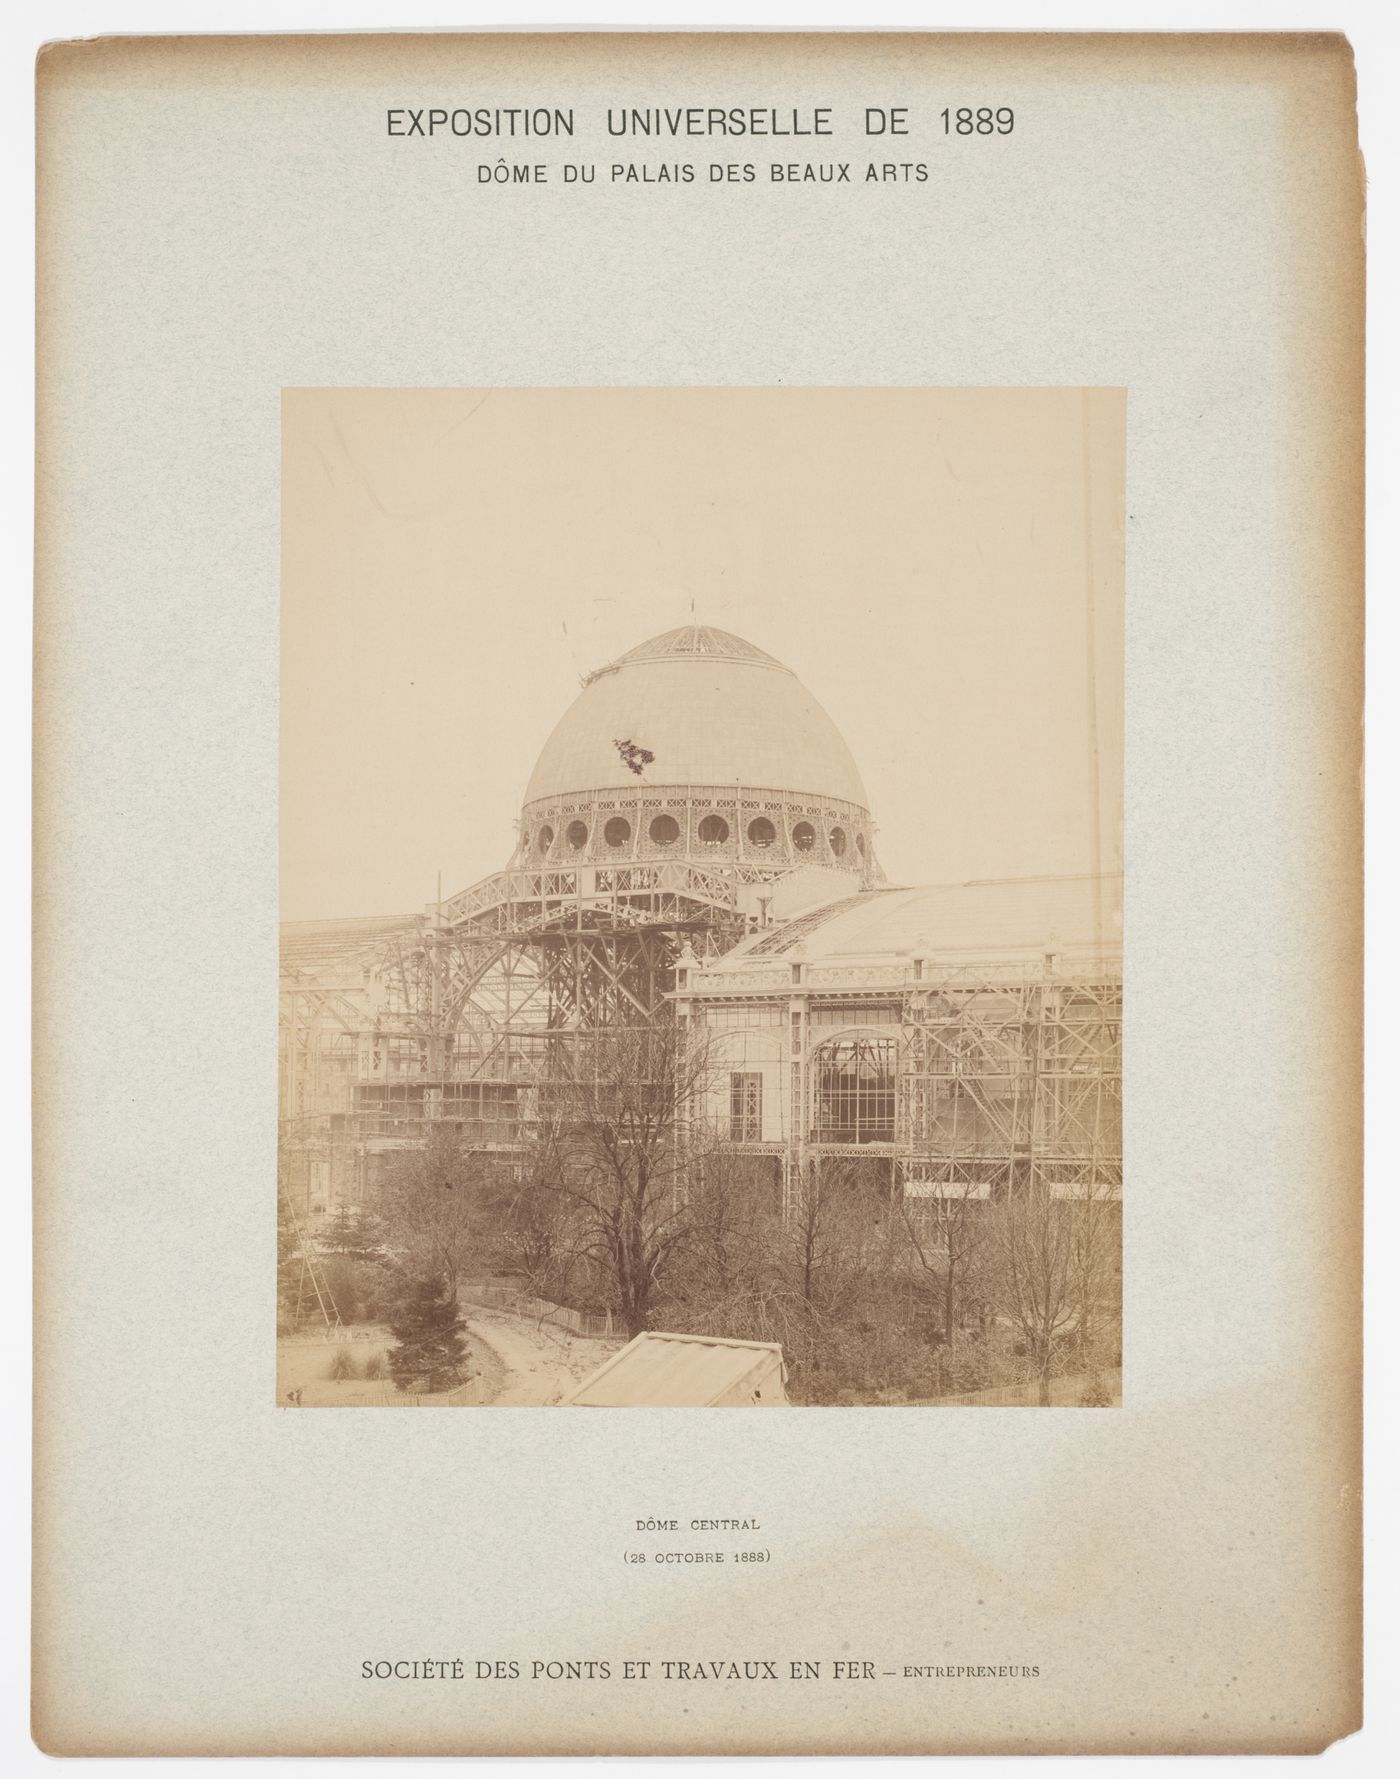 View of the central dome of the Dome du Palais des Beaux Arts, Exposition Universelle de 1889, Paris, France